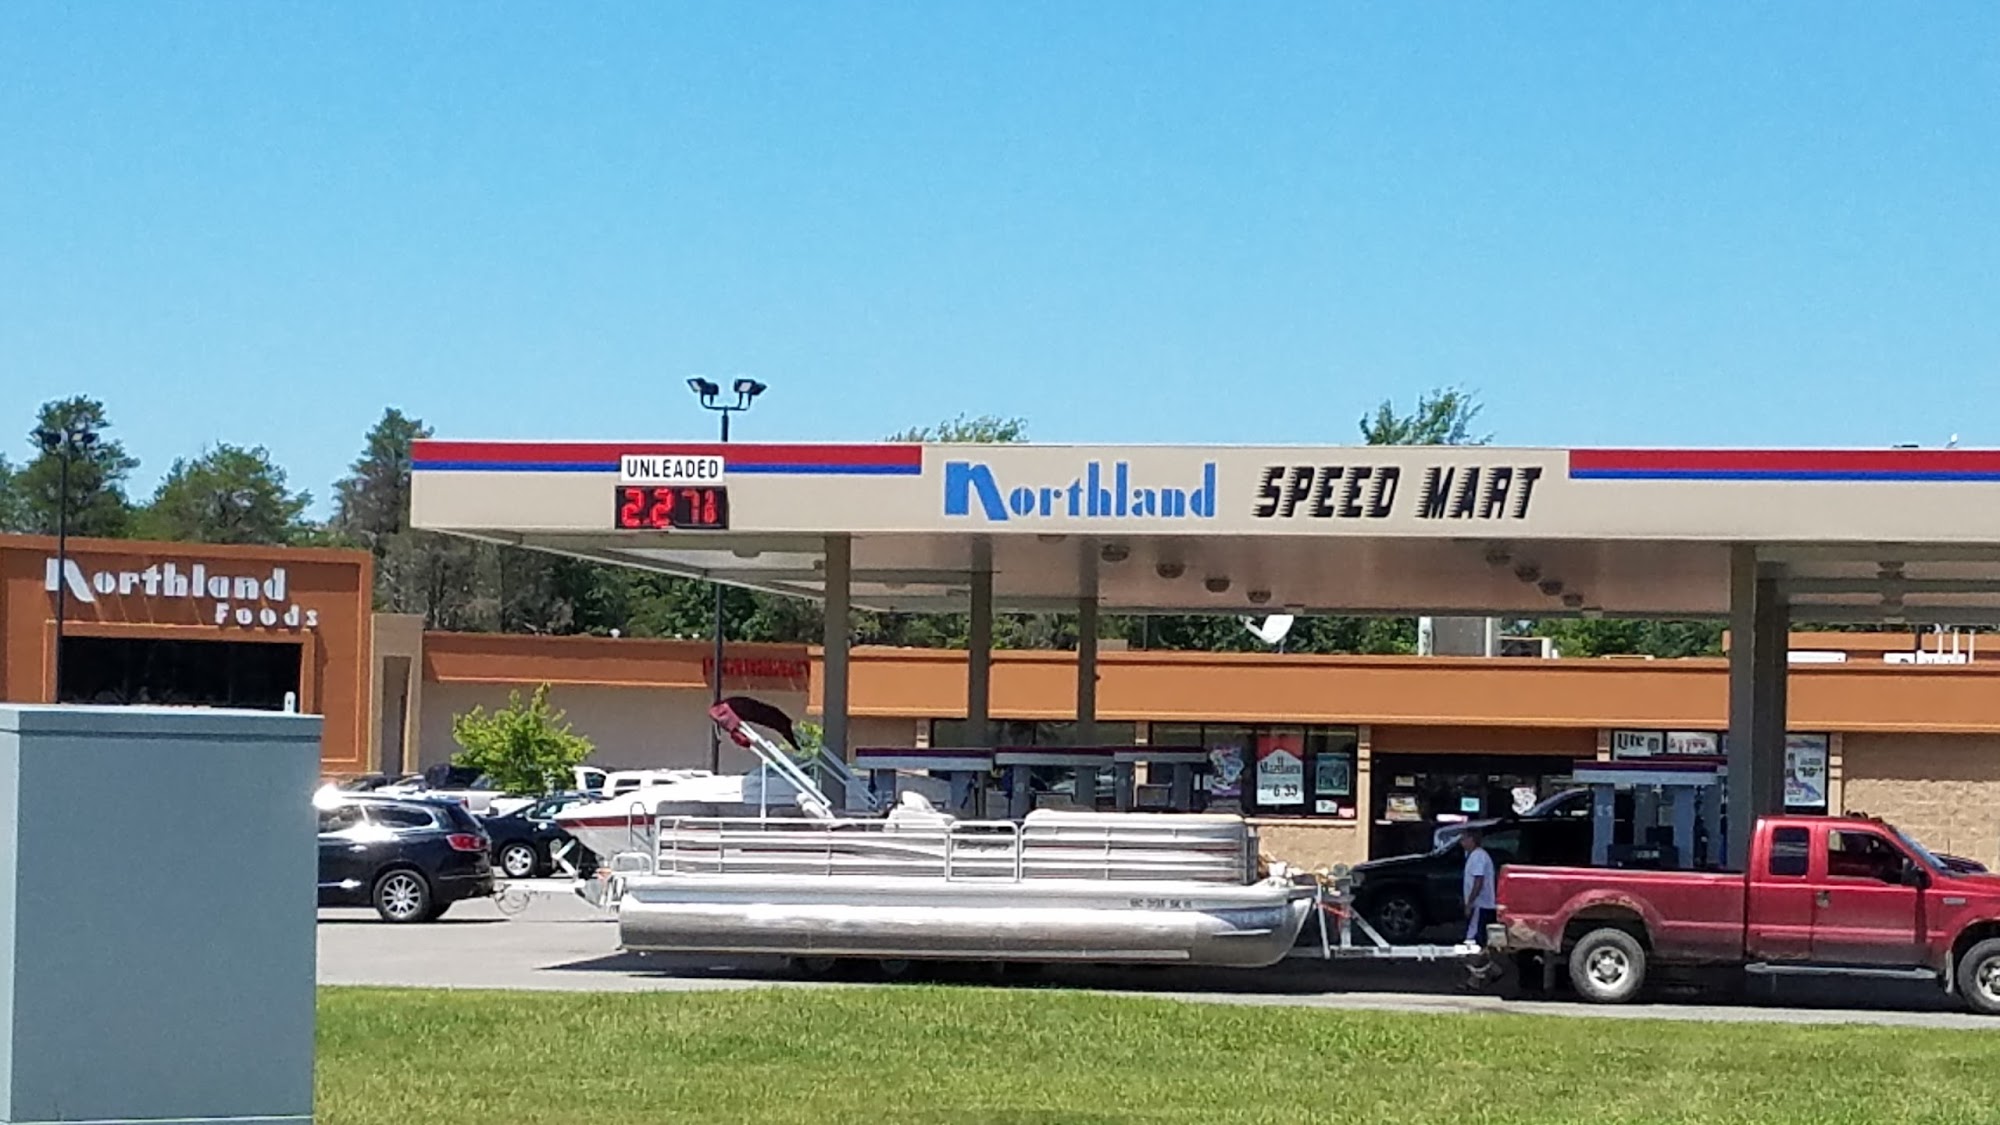 Northland Speed Mart